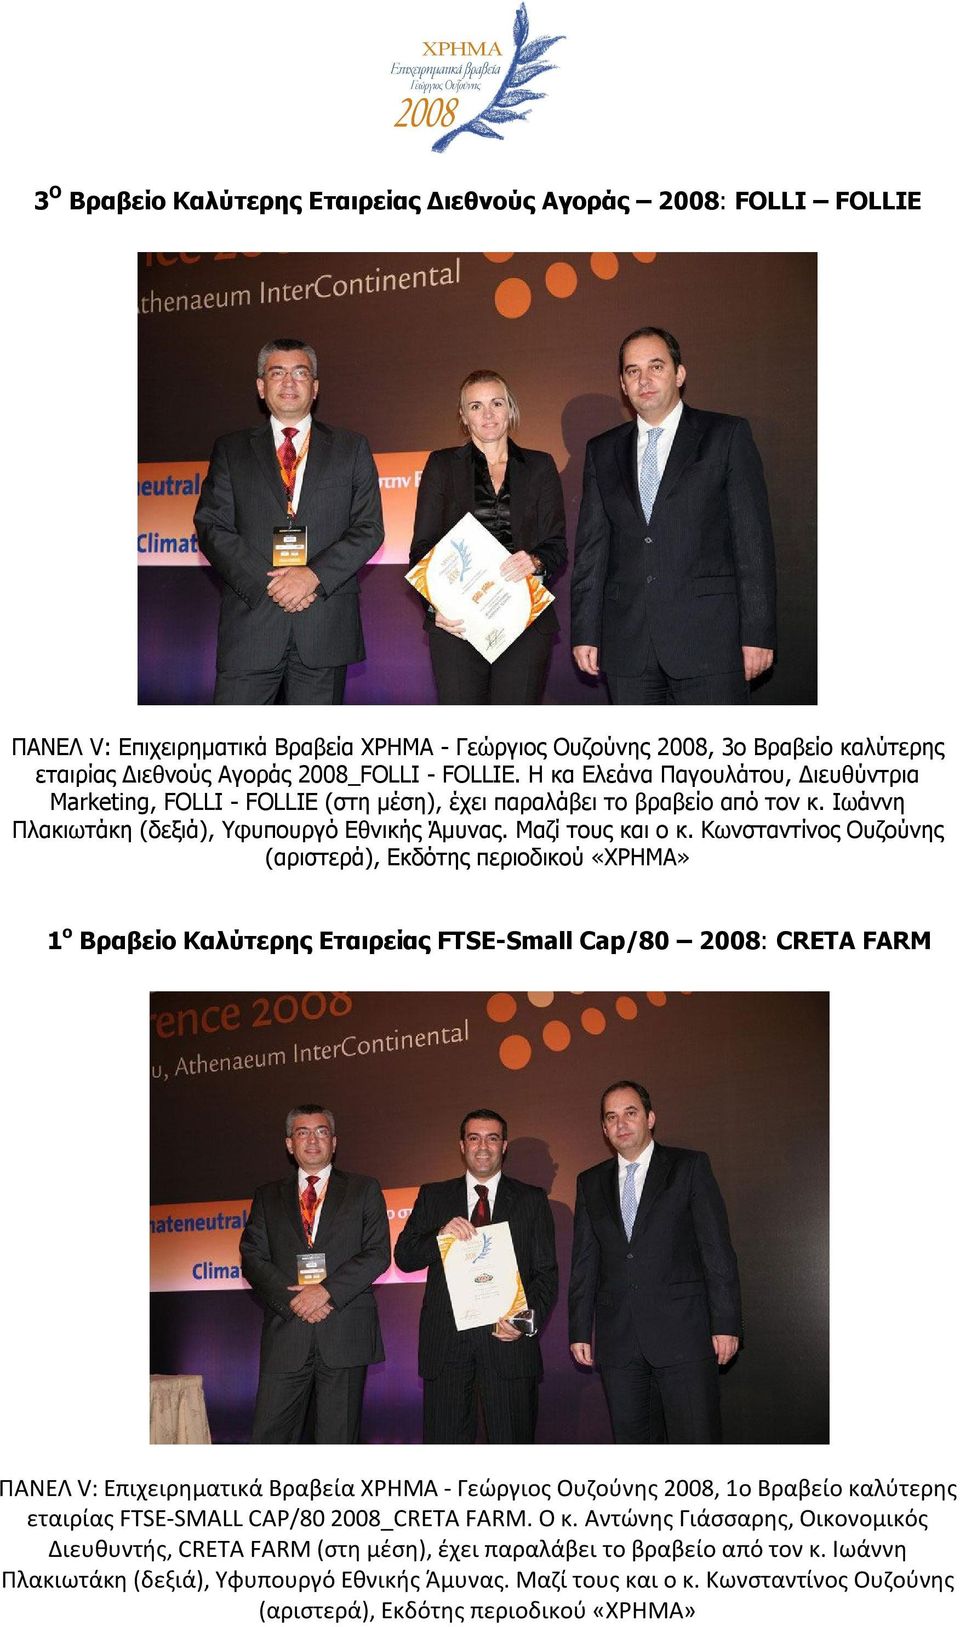 Κωνσταντίνος Ουζούνης (αριστερά), Εκδότης περιοδικού «ΧΡΗΜΑ» 1 ο Βραβείο Καλύτερης Εταιρείας FTSE-Small Cap/80 2008: CRETA FARM ΠΑΝΕΛ V: Επιχειρηματικά Βραβεία ΧΡΗΜΑ - Γεώργιος Ουζούνης 2008, 1ο